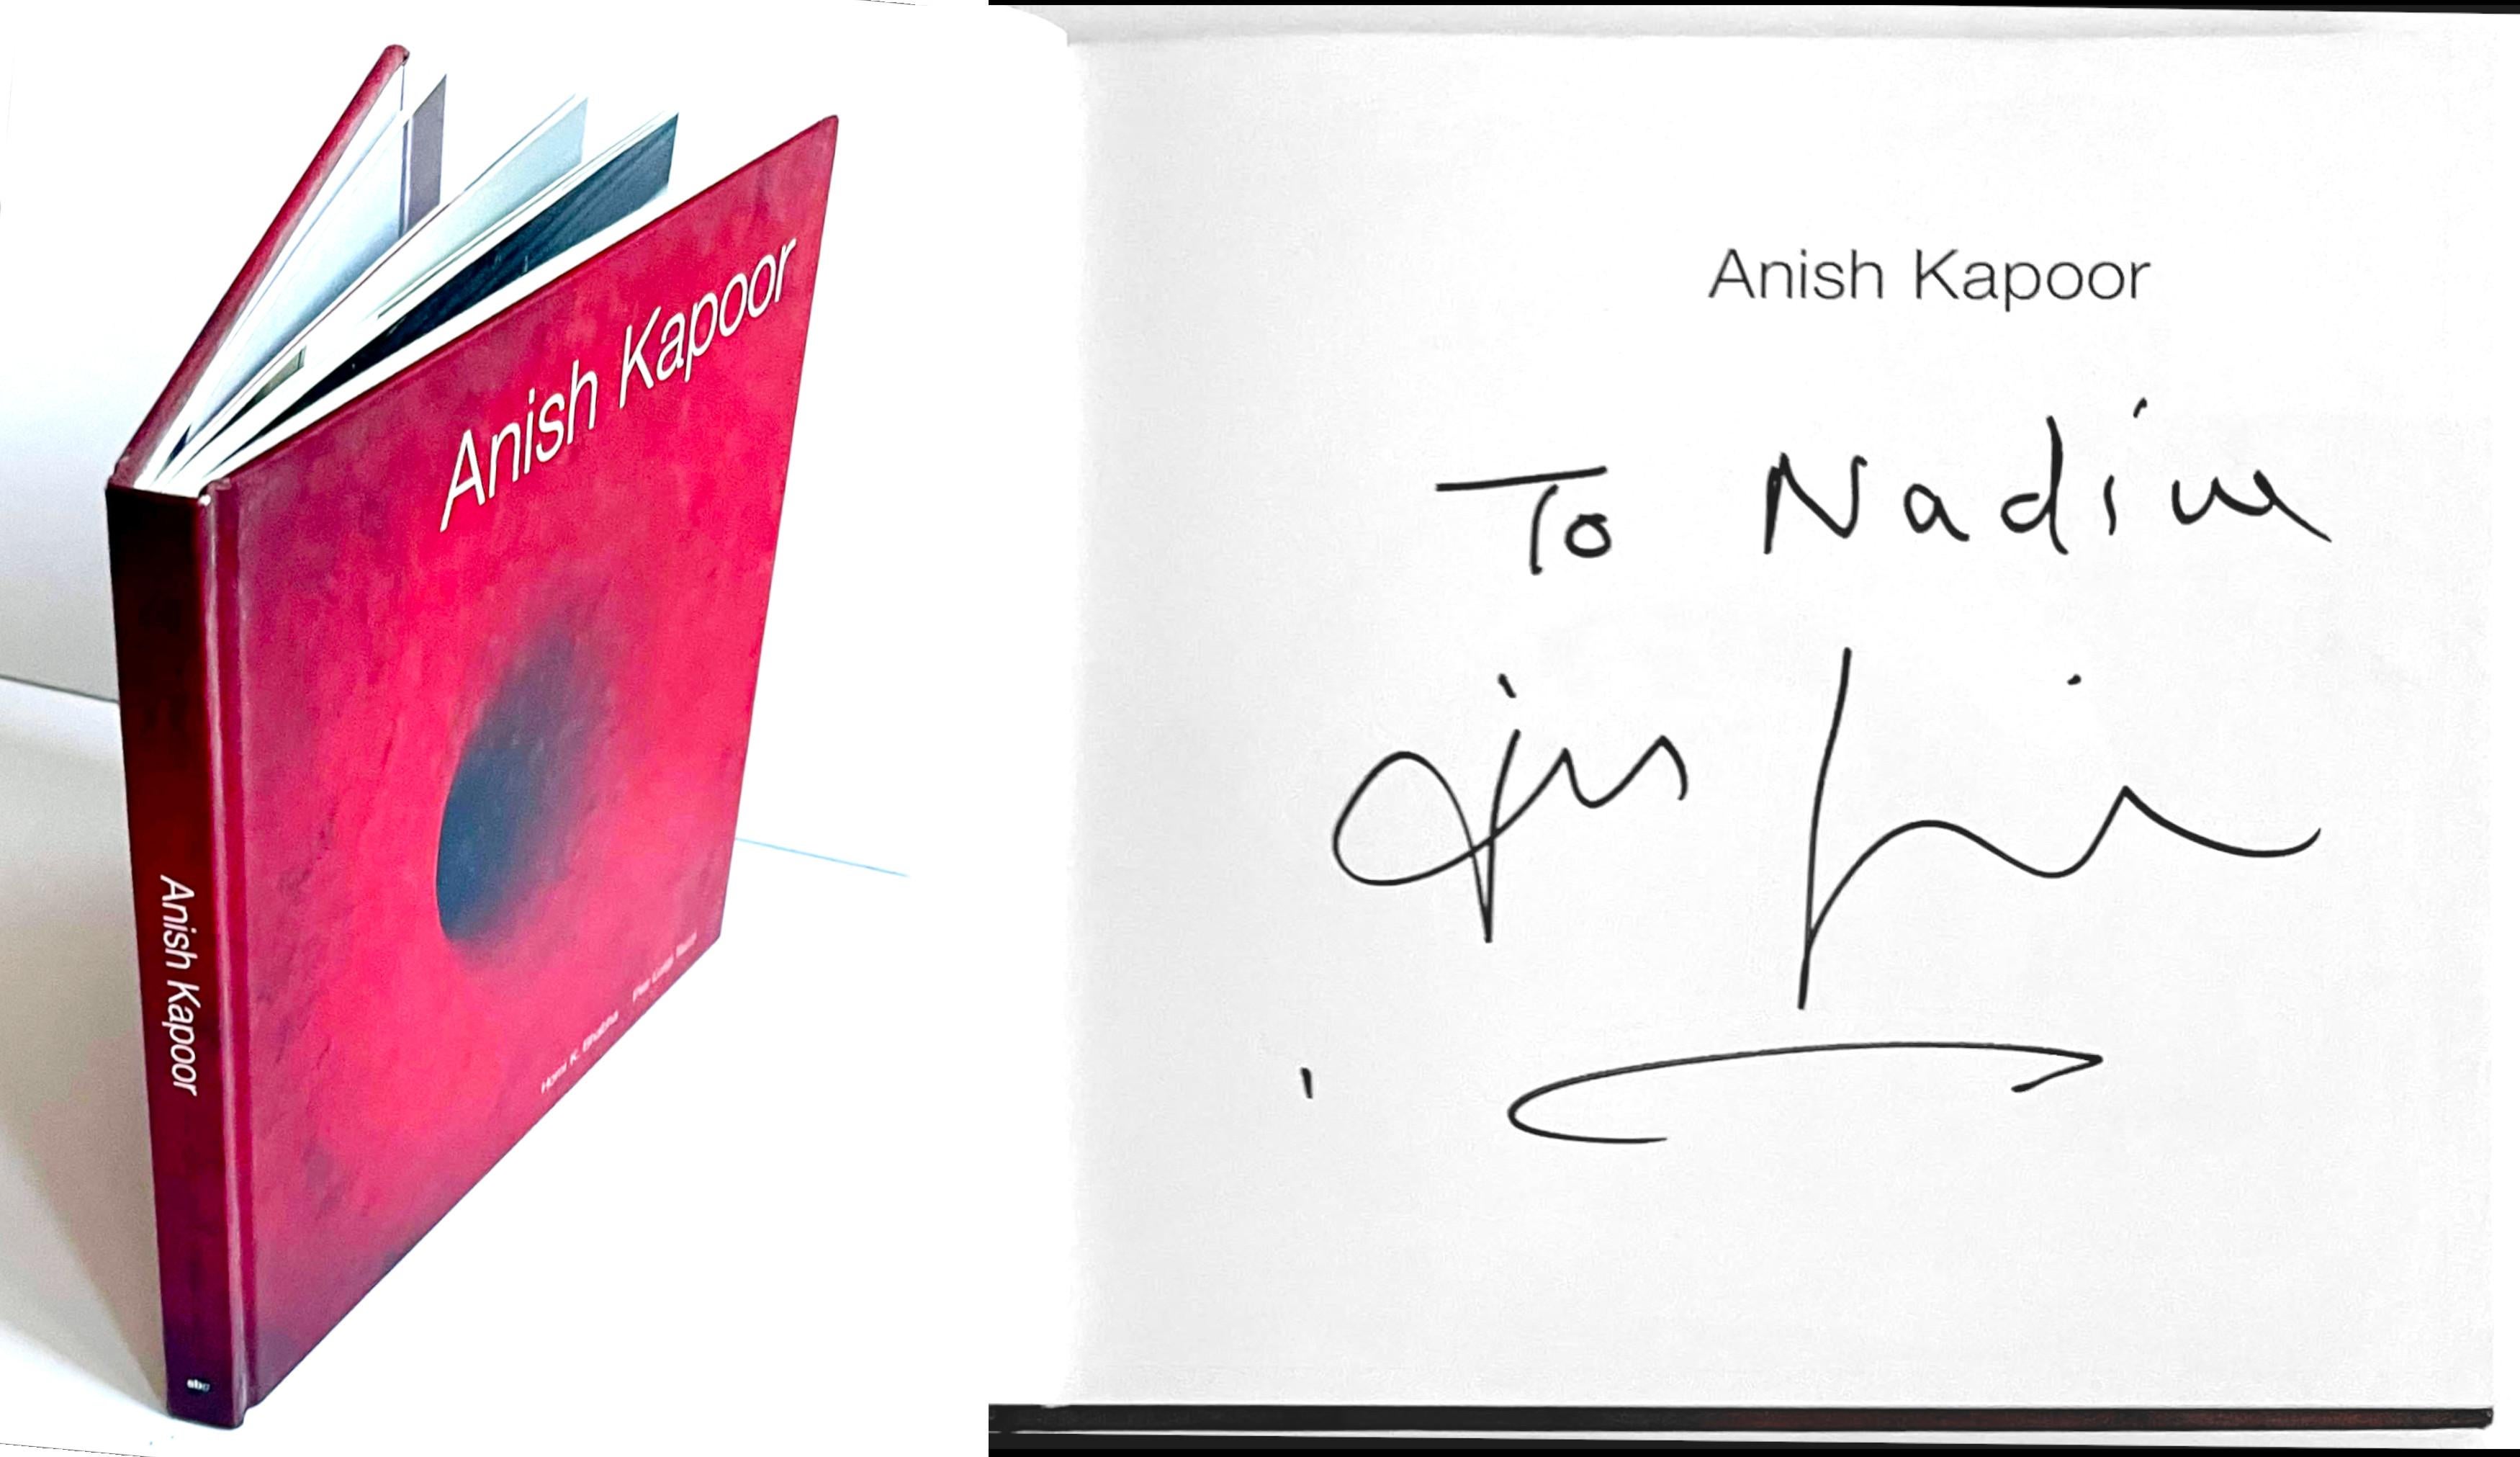 Anish Kapoor
Anish Kapoor (handsigniert und Nadine gewidmet von Anish Kapoor), 1998
Gebundene Monografie (von Anish Kapoor handsigniert und Nadine gewidmet) 
Von Anish Kapoor handsigniert und dem jetzigen Besitzer gewidmet
8 3/4 × 8 3/4 × 1/2